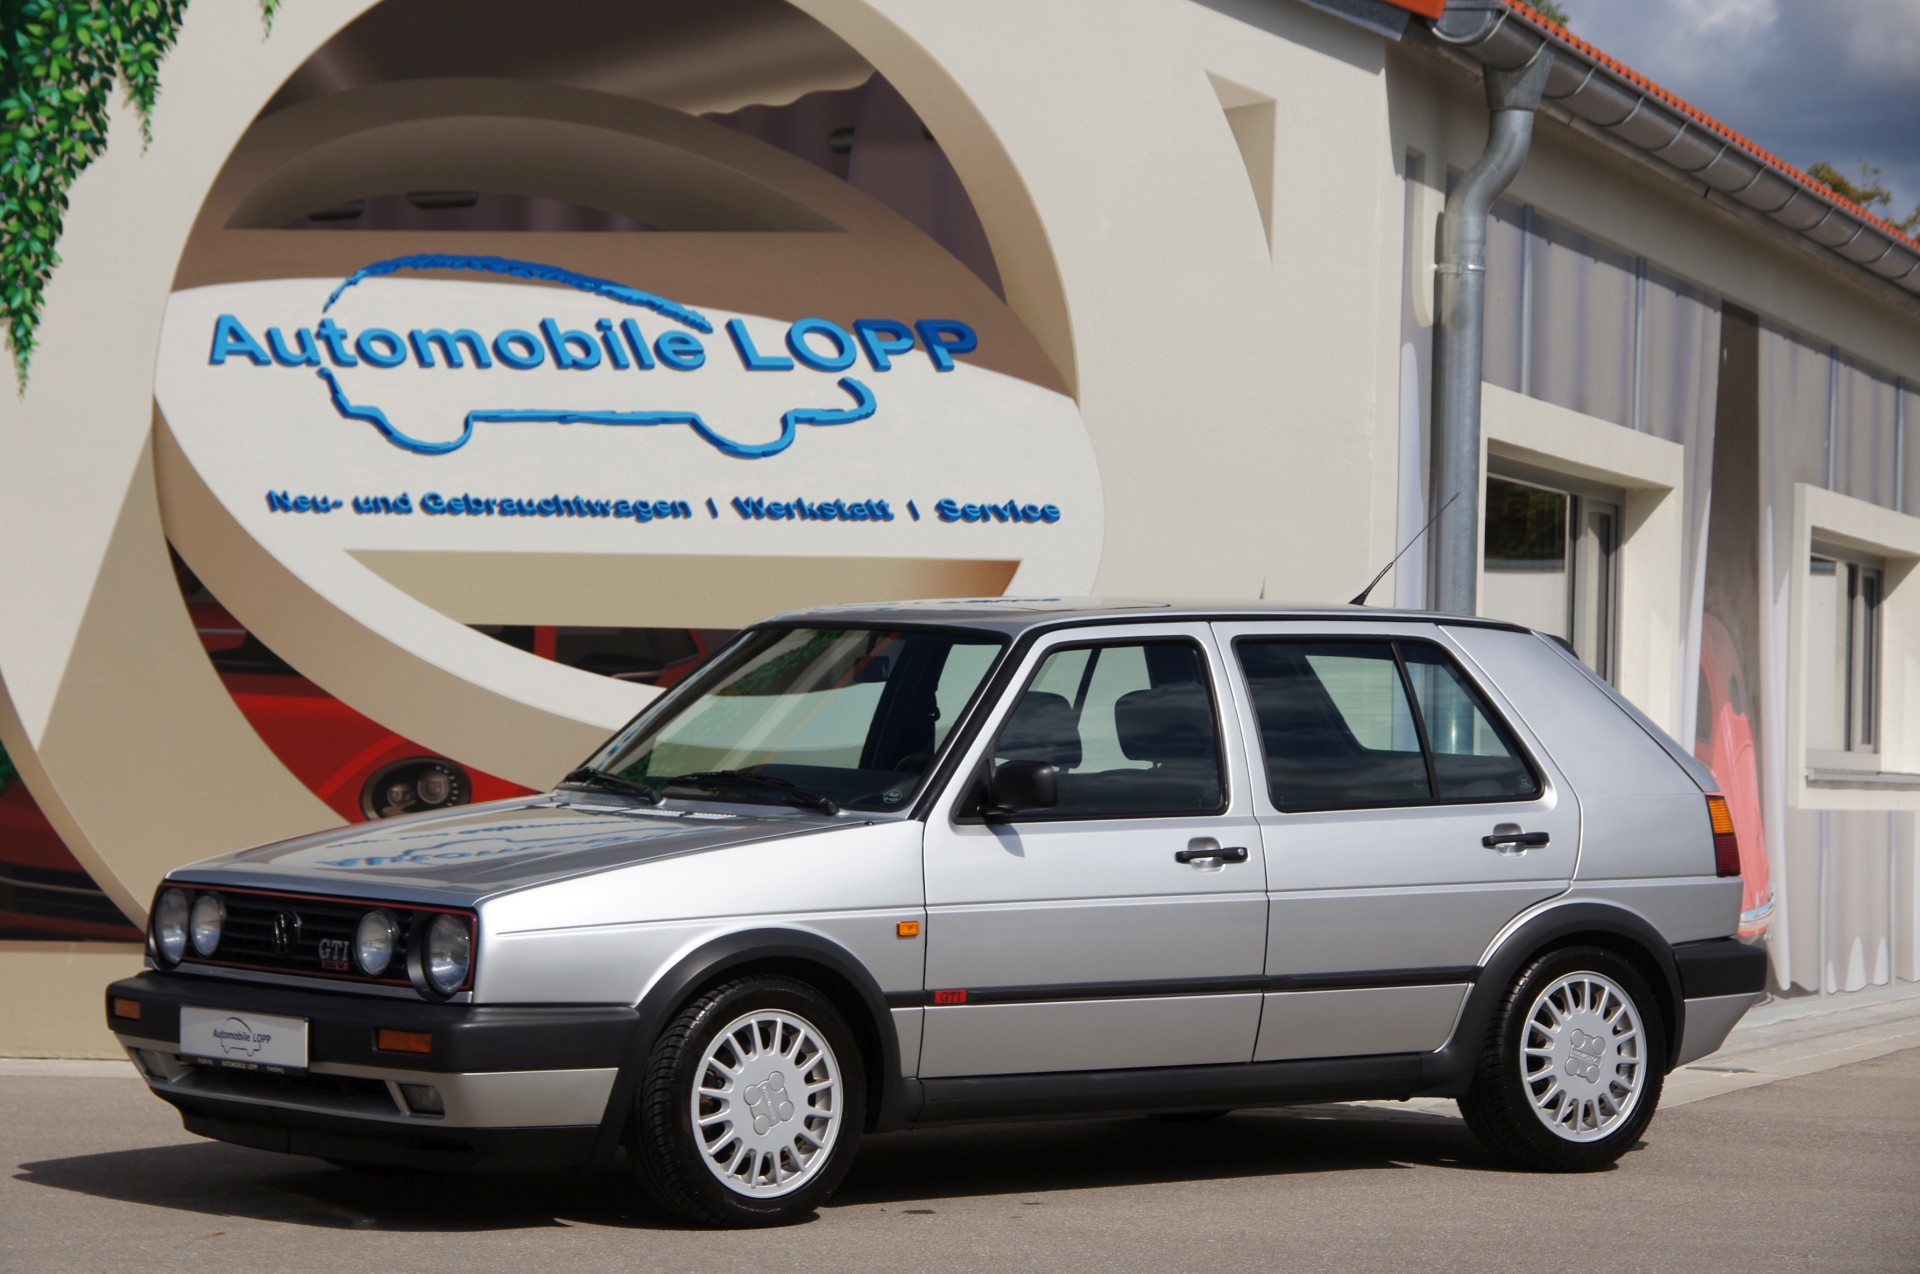 https://www.automobile-lopp.de/website/themes/automobile-lopp.de/dynamic/fe/VW-Golf-II-GTI-16V-1990-01.jpg